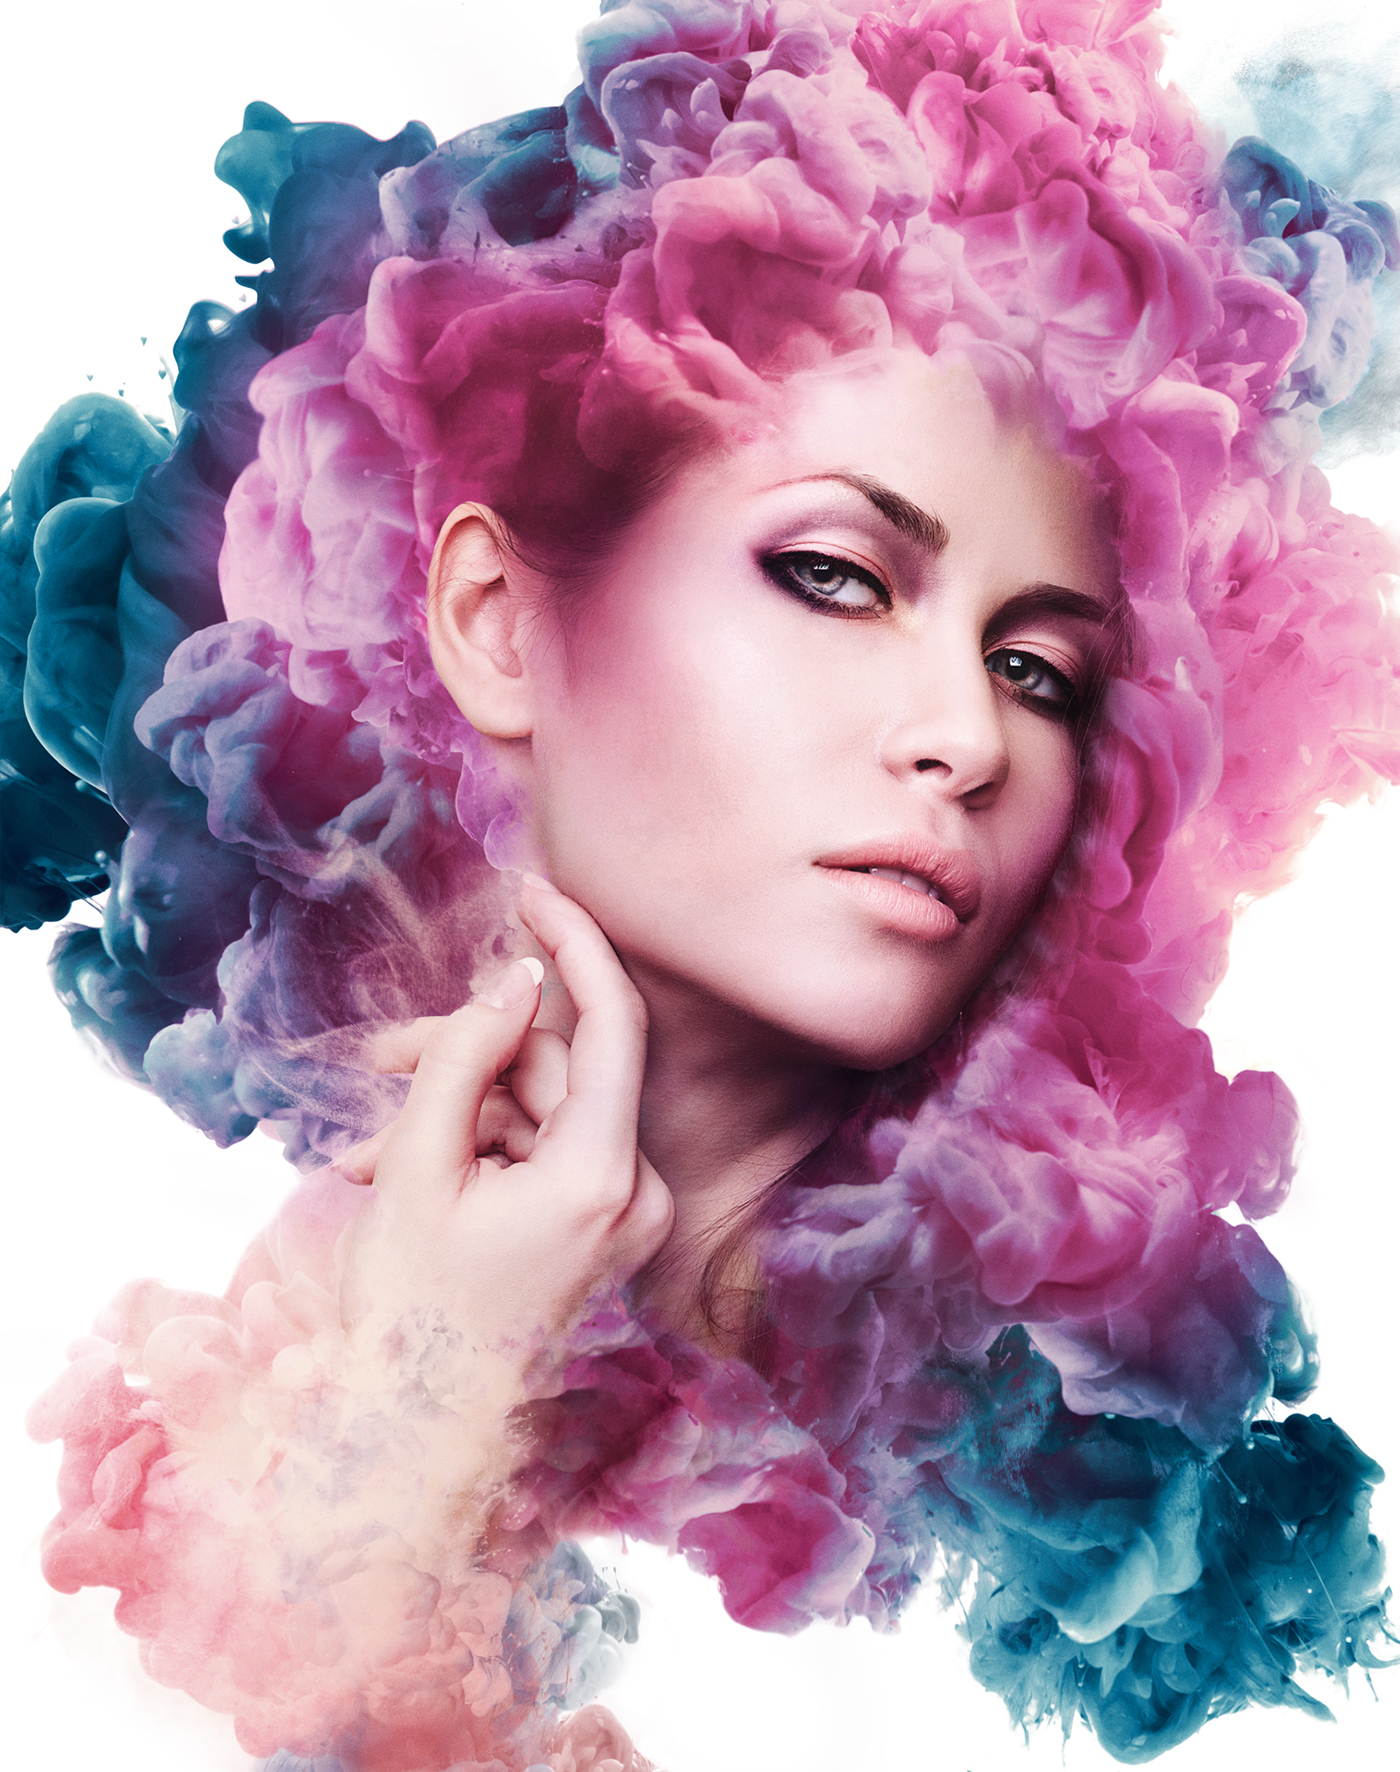 advanced photoshop drew lundquist ink cloud color vibrant beauty model